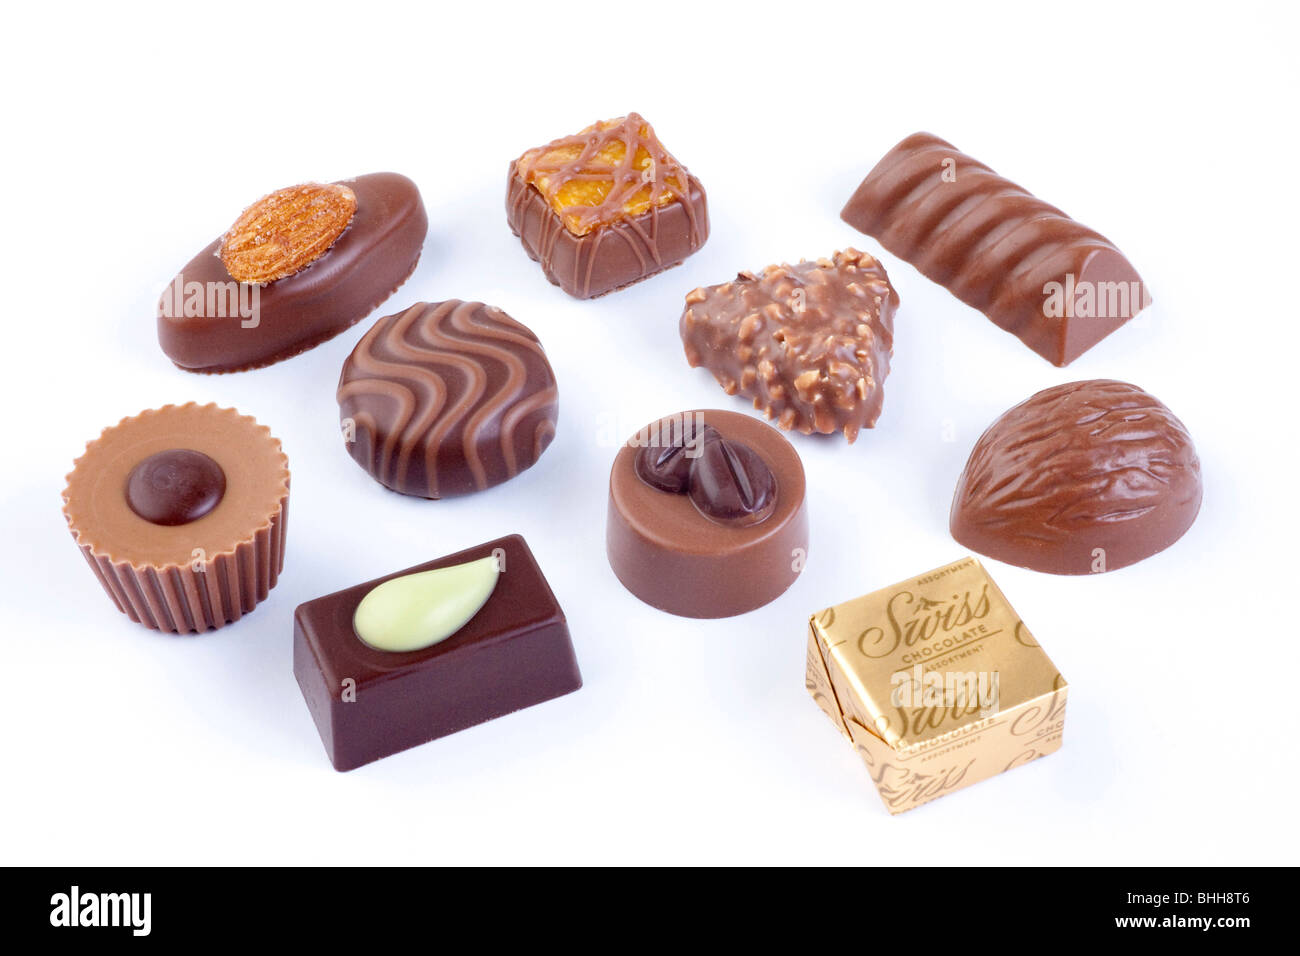 Assortiment de chocolats suisse de luxe Banque D'Images